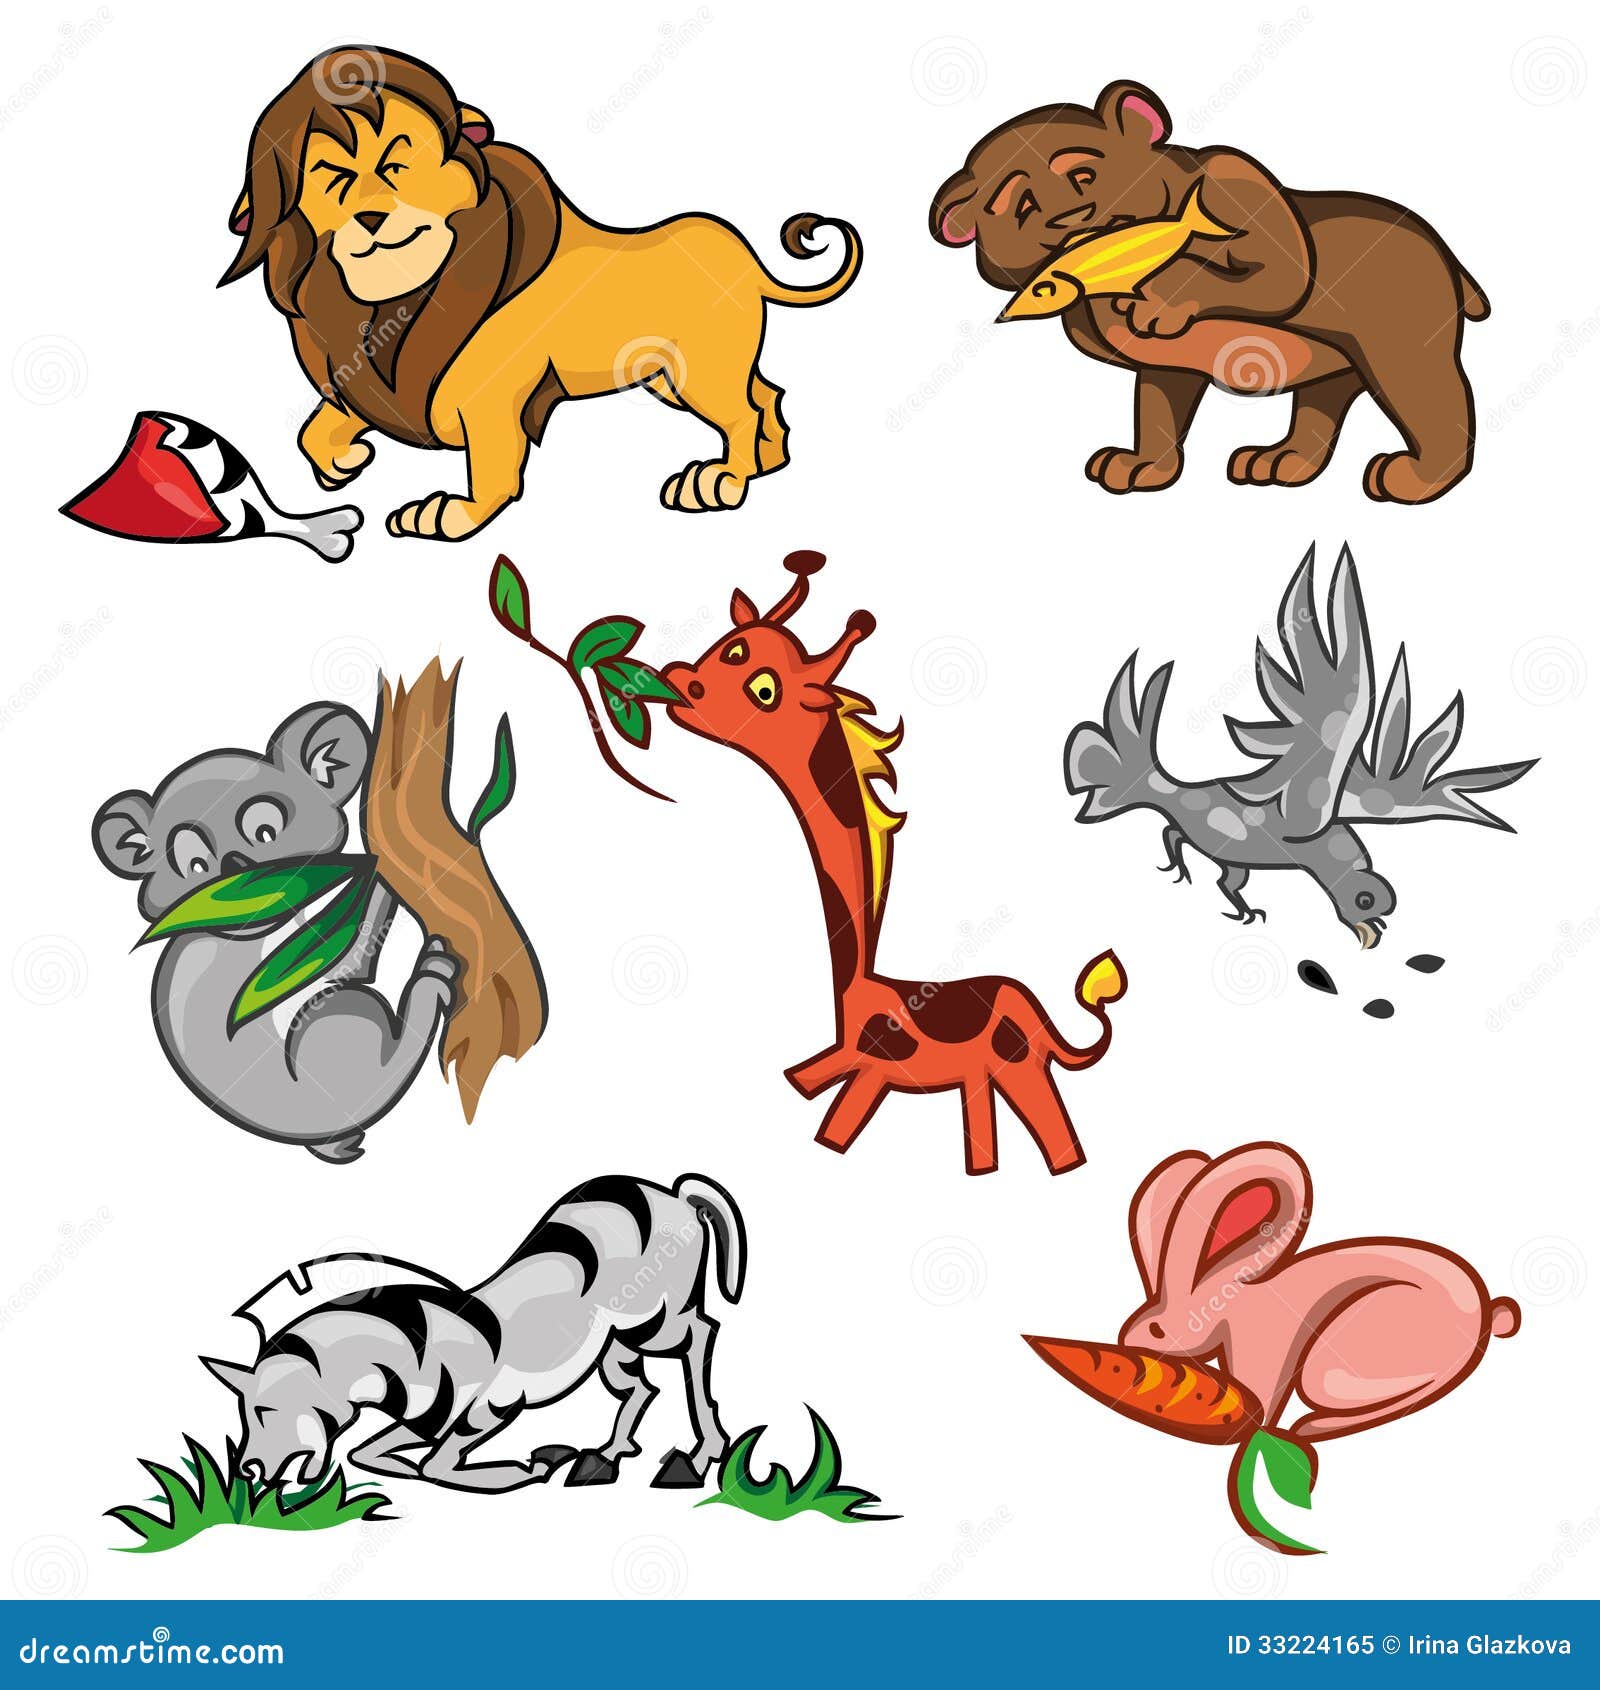 Lion Eat Meat Stock Illustrations – 41 Lion Eat Meat Stock Illustrations,  Vectors & Clipart - Dreamstime